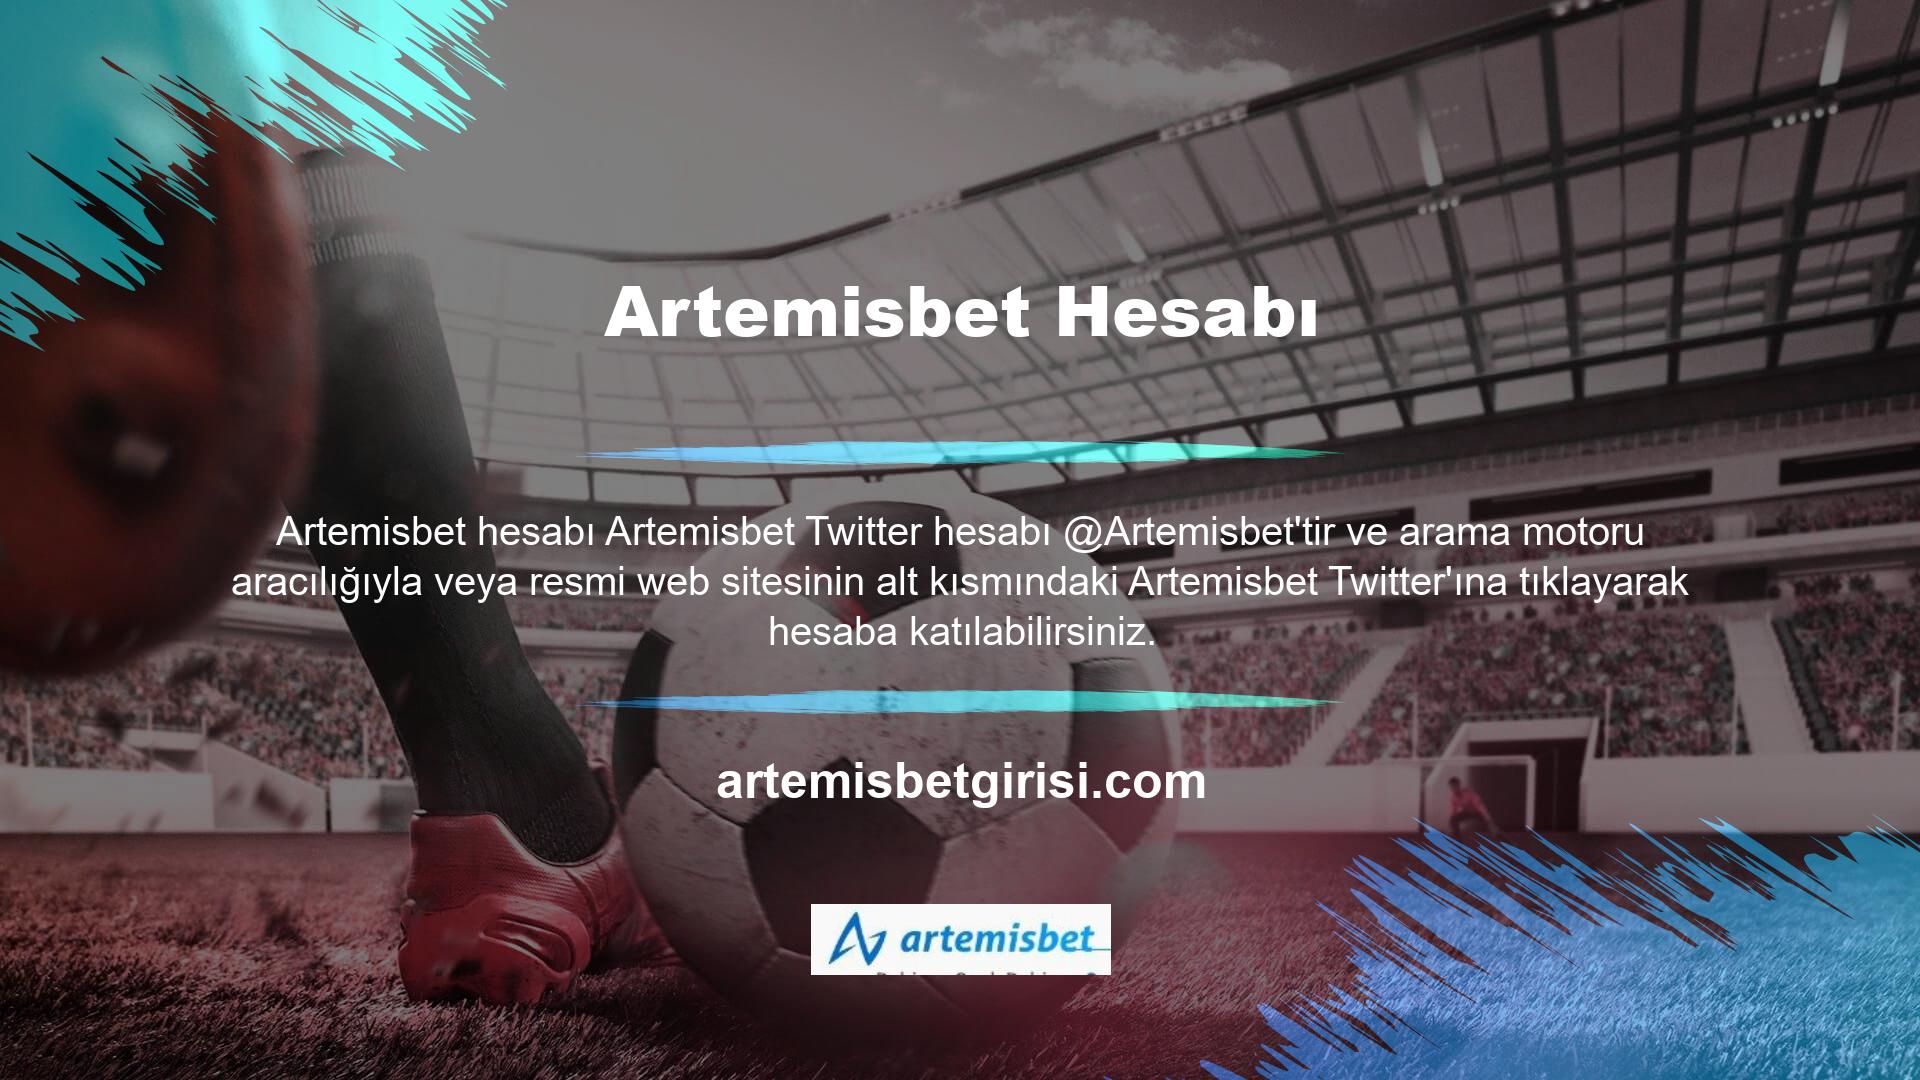 Artemisbet hesabı kullanıcı adını girin ve Artemisbet Twitter arama çubuğuna ekleyin veya anahtar kelime sayısını azaltın, Artemisbet Twitter hesabını etiketlemek için gönderilen bir tweet göreceksiniz